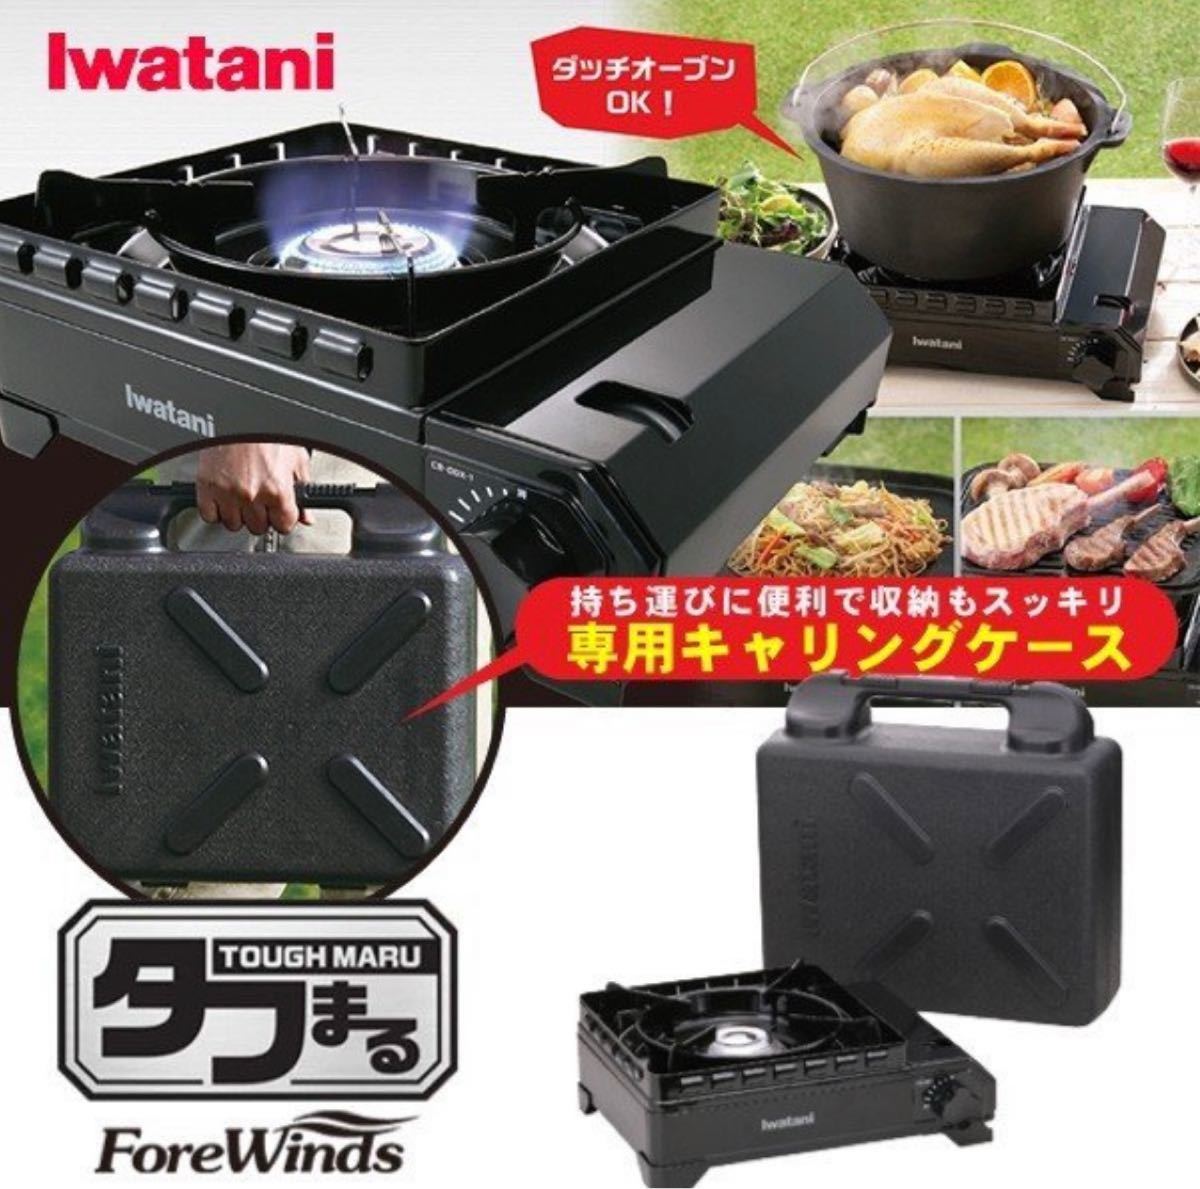 カセットこんろ Iwatani CB-ODX-1 カセットフータフまる ガスコンロ アウトドア キャンプ用品 BBQ イワタニ